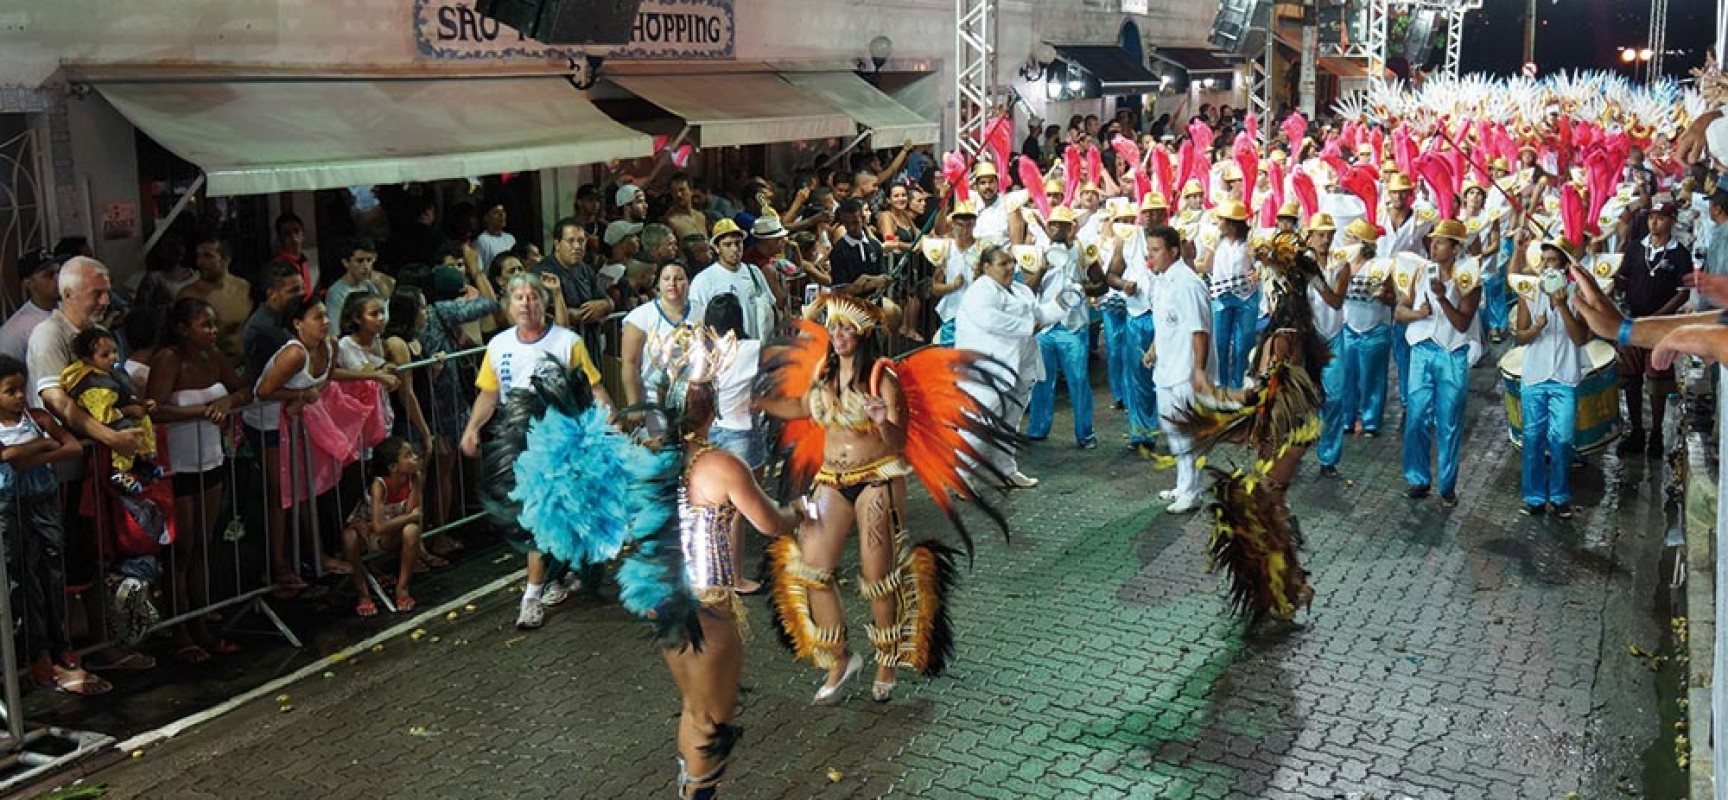 Ilhabela comemora Dia do Samba com show de “Os Originais do Samba